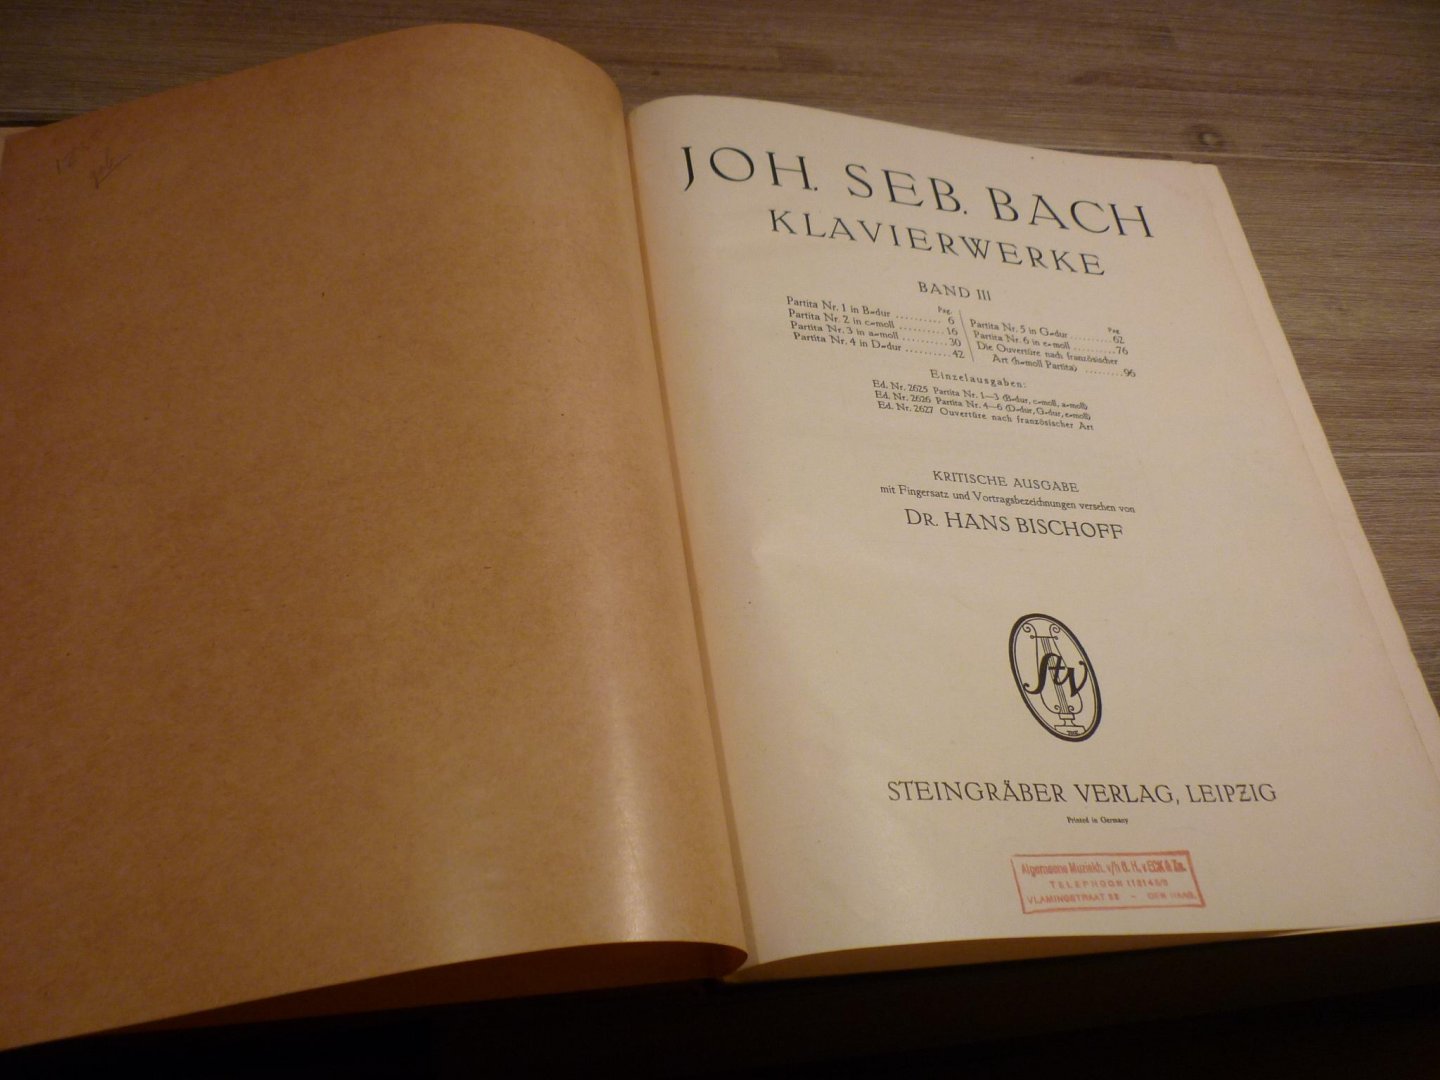 Bach; J. S. (1685-1750) - Klavierwerke; Band 3 - Partita Nr. 1-6; Die Ouverture nach Franzosischer Art; Krititsche Ausgabe mit Fingersatz und Vortragsbezeichnungen versehen von Dr. Hans Bischoff (Berlin, Apr. 1882) voor Piano - Originele unieke uitgave!